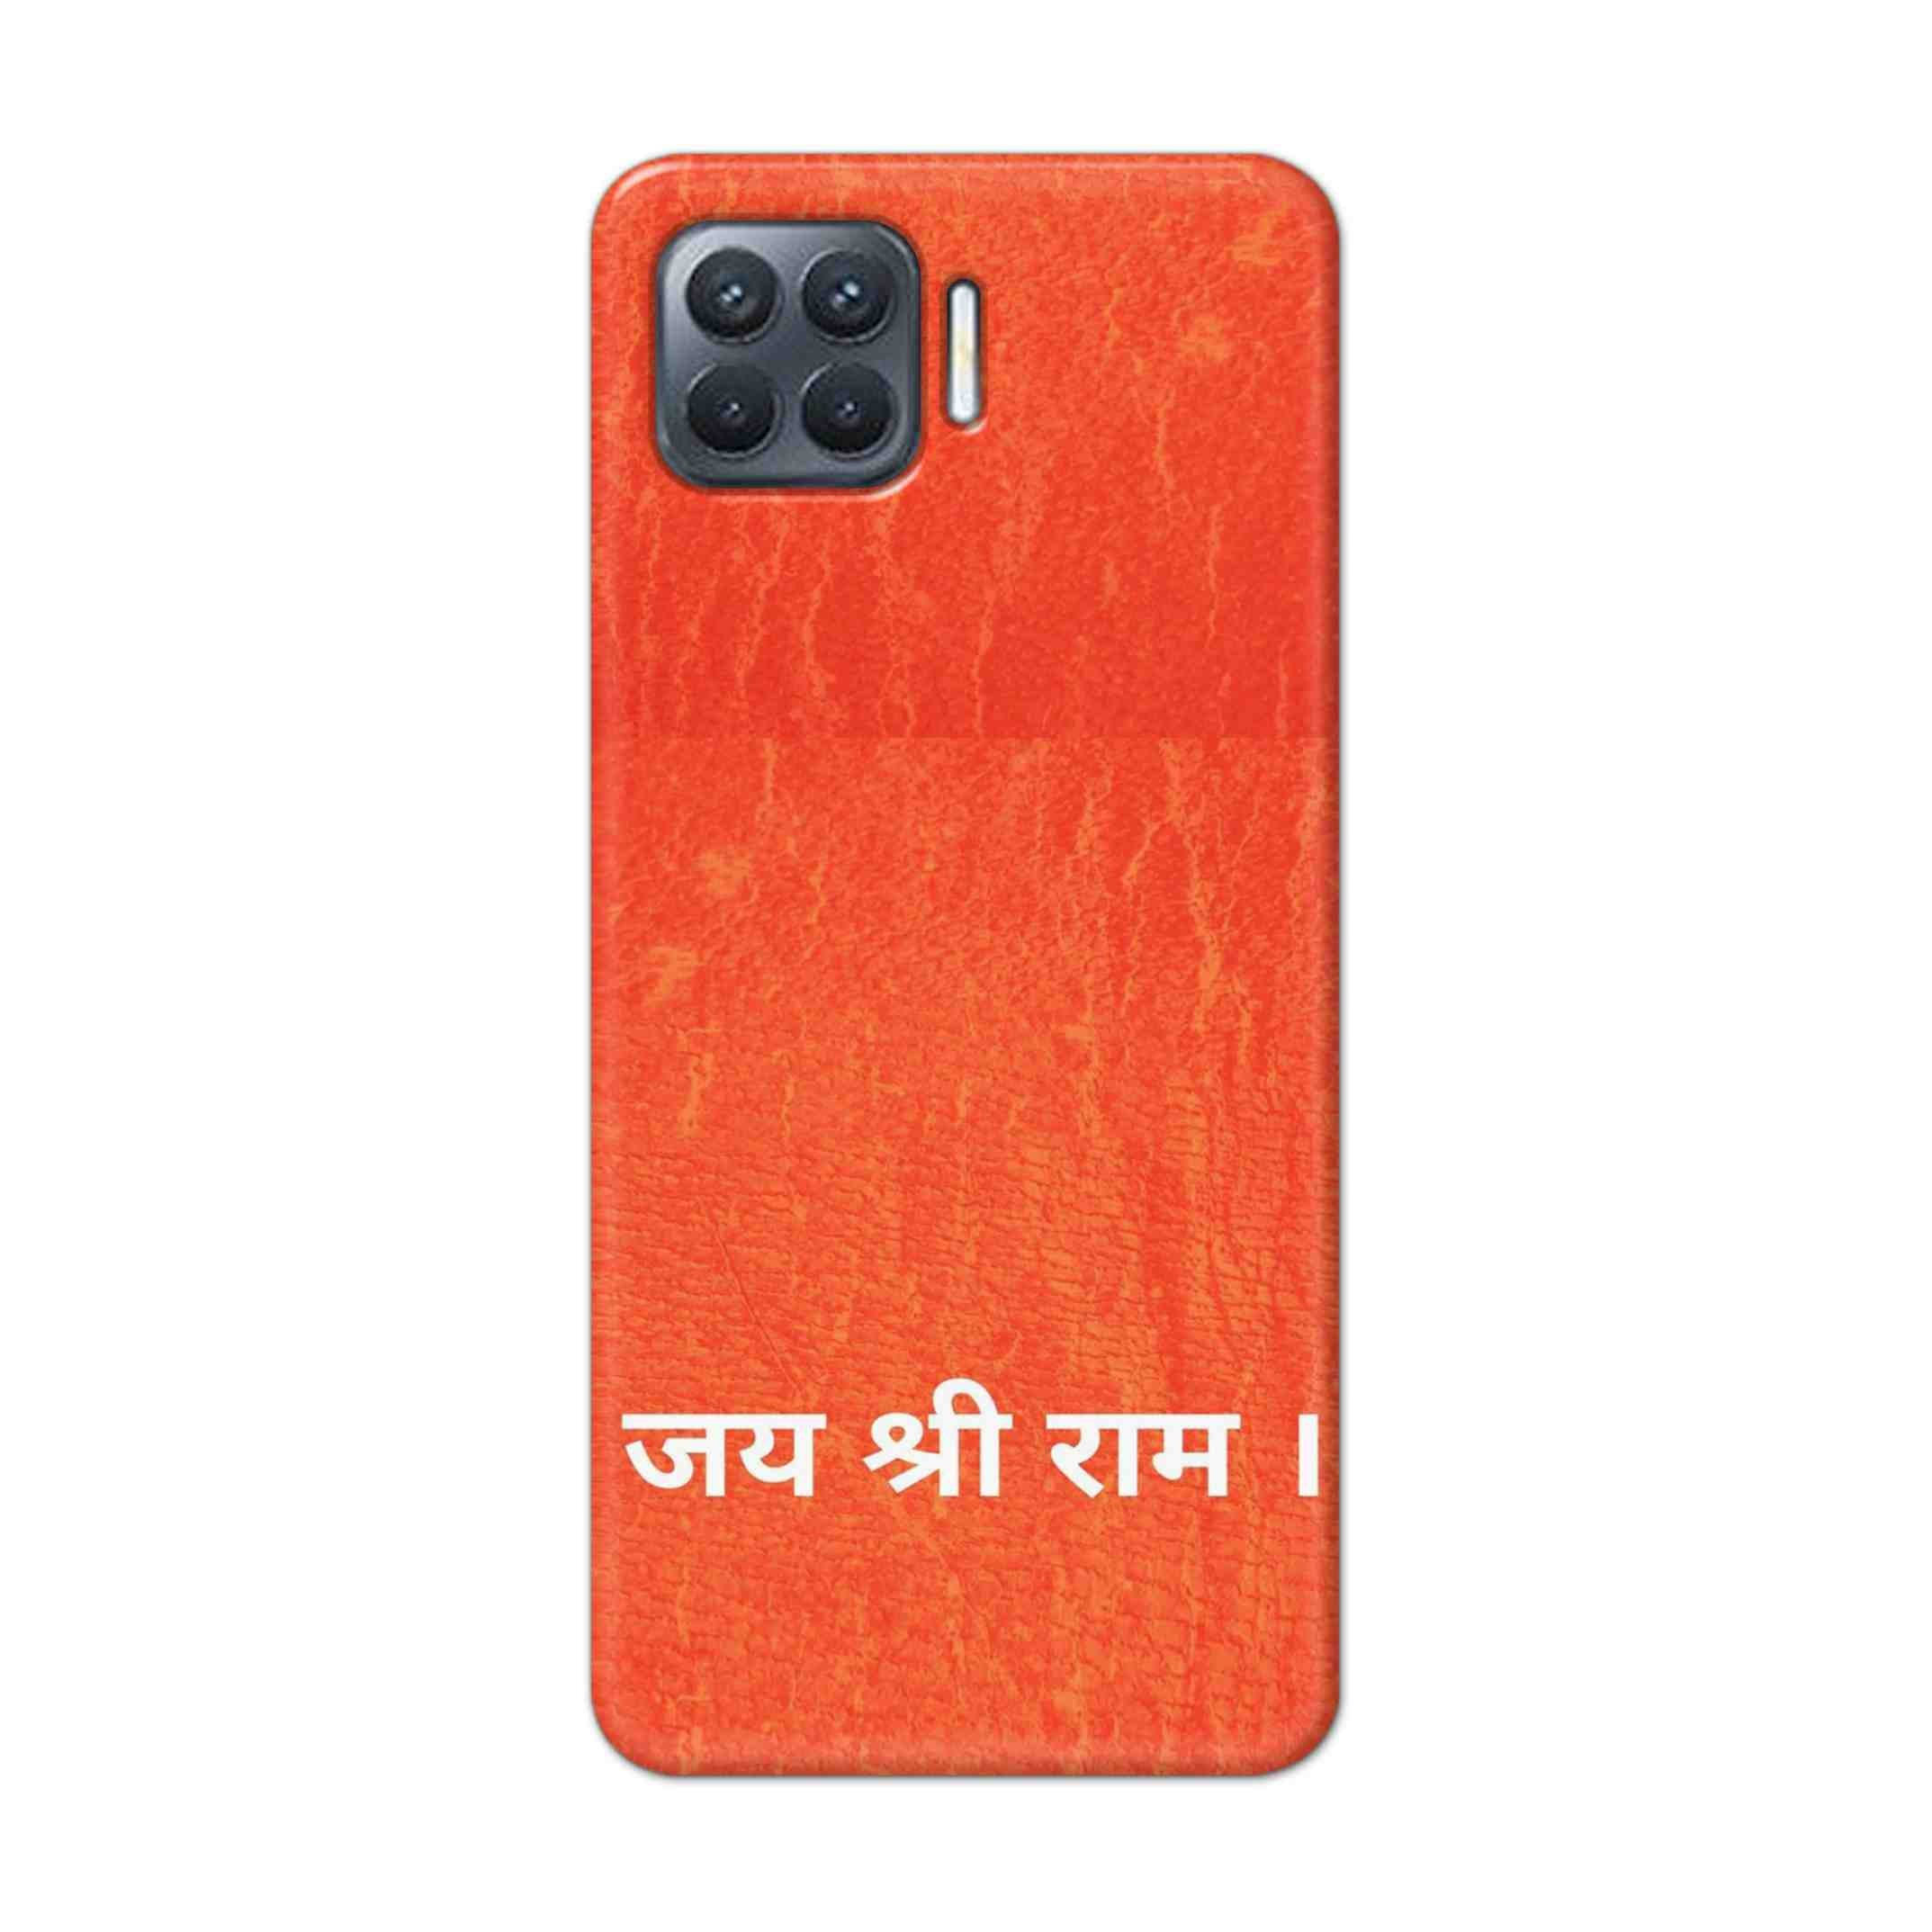 Buy Jai Shree Ram Hard Back Mobile Phone Case Cover For Oppo F17 Pro Online